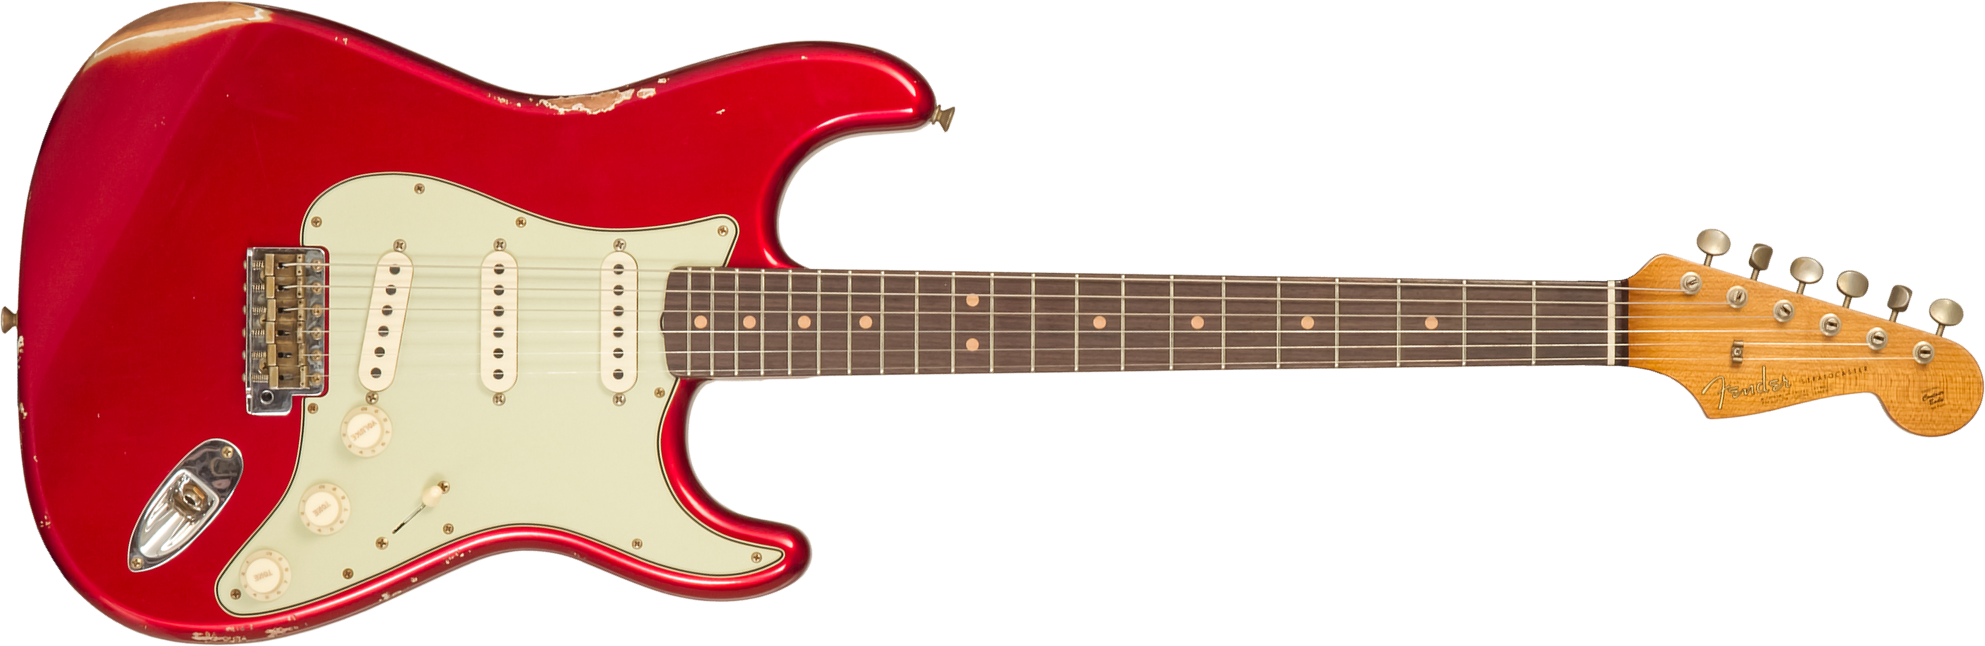 Fender Custom Shop Strat 1963 3s Trem Rw #cz579406 - Relic Aged Candy Apple Red - Elektrische gitaar in Str-vorm - Main picture